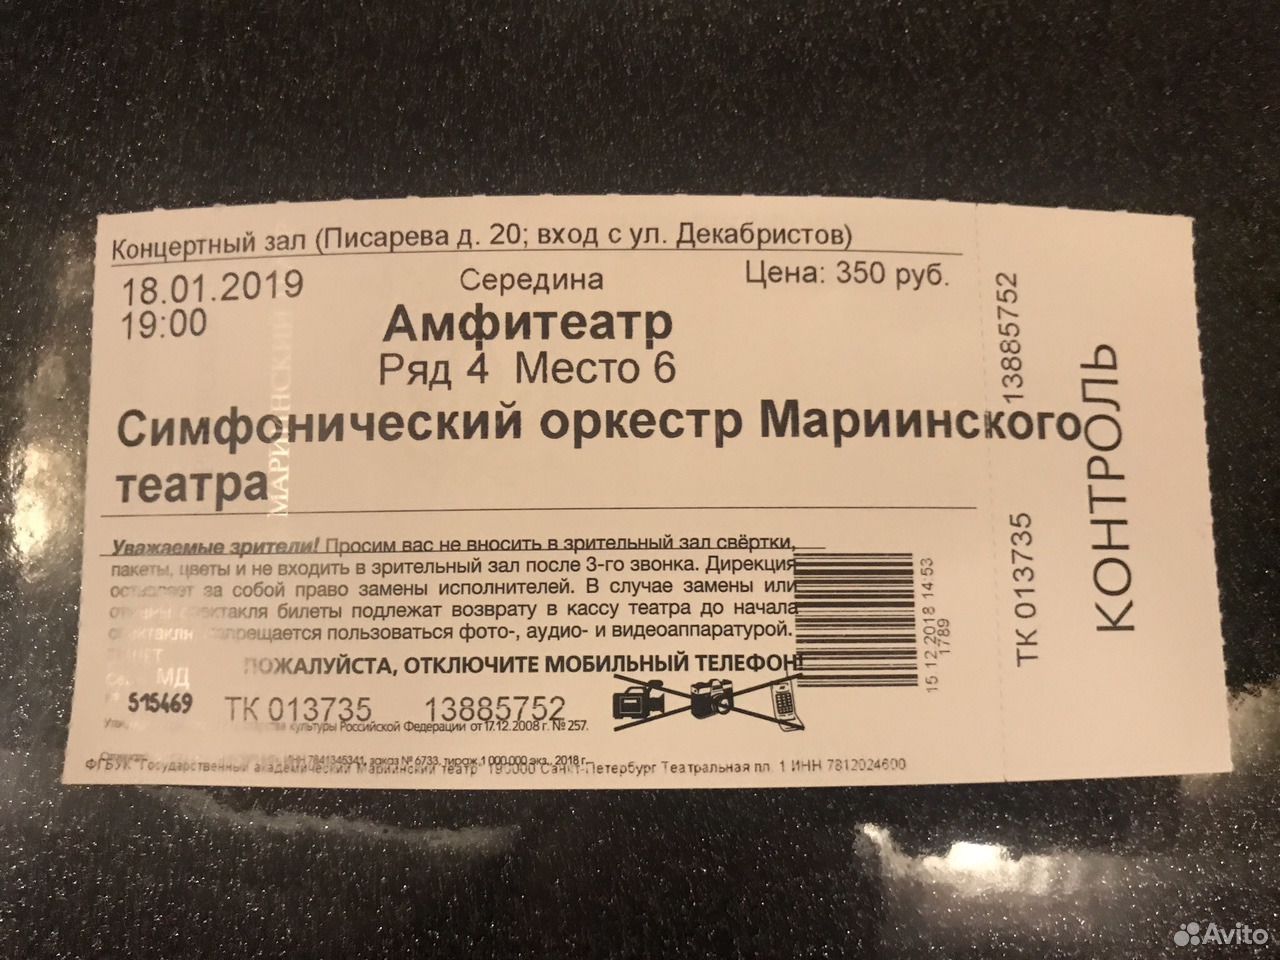 Цена билетов в мариинском театре. Билет на симфонический оркестр. Как выглядит билет на концерт. Пригласительные билеты на концерт симфонического оркестра. Старый билет на симфонический оркестр.